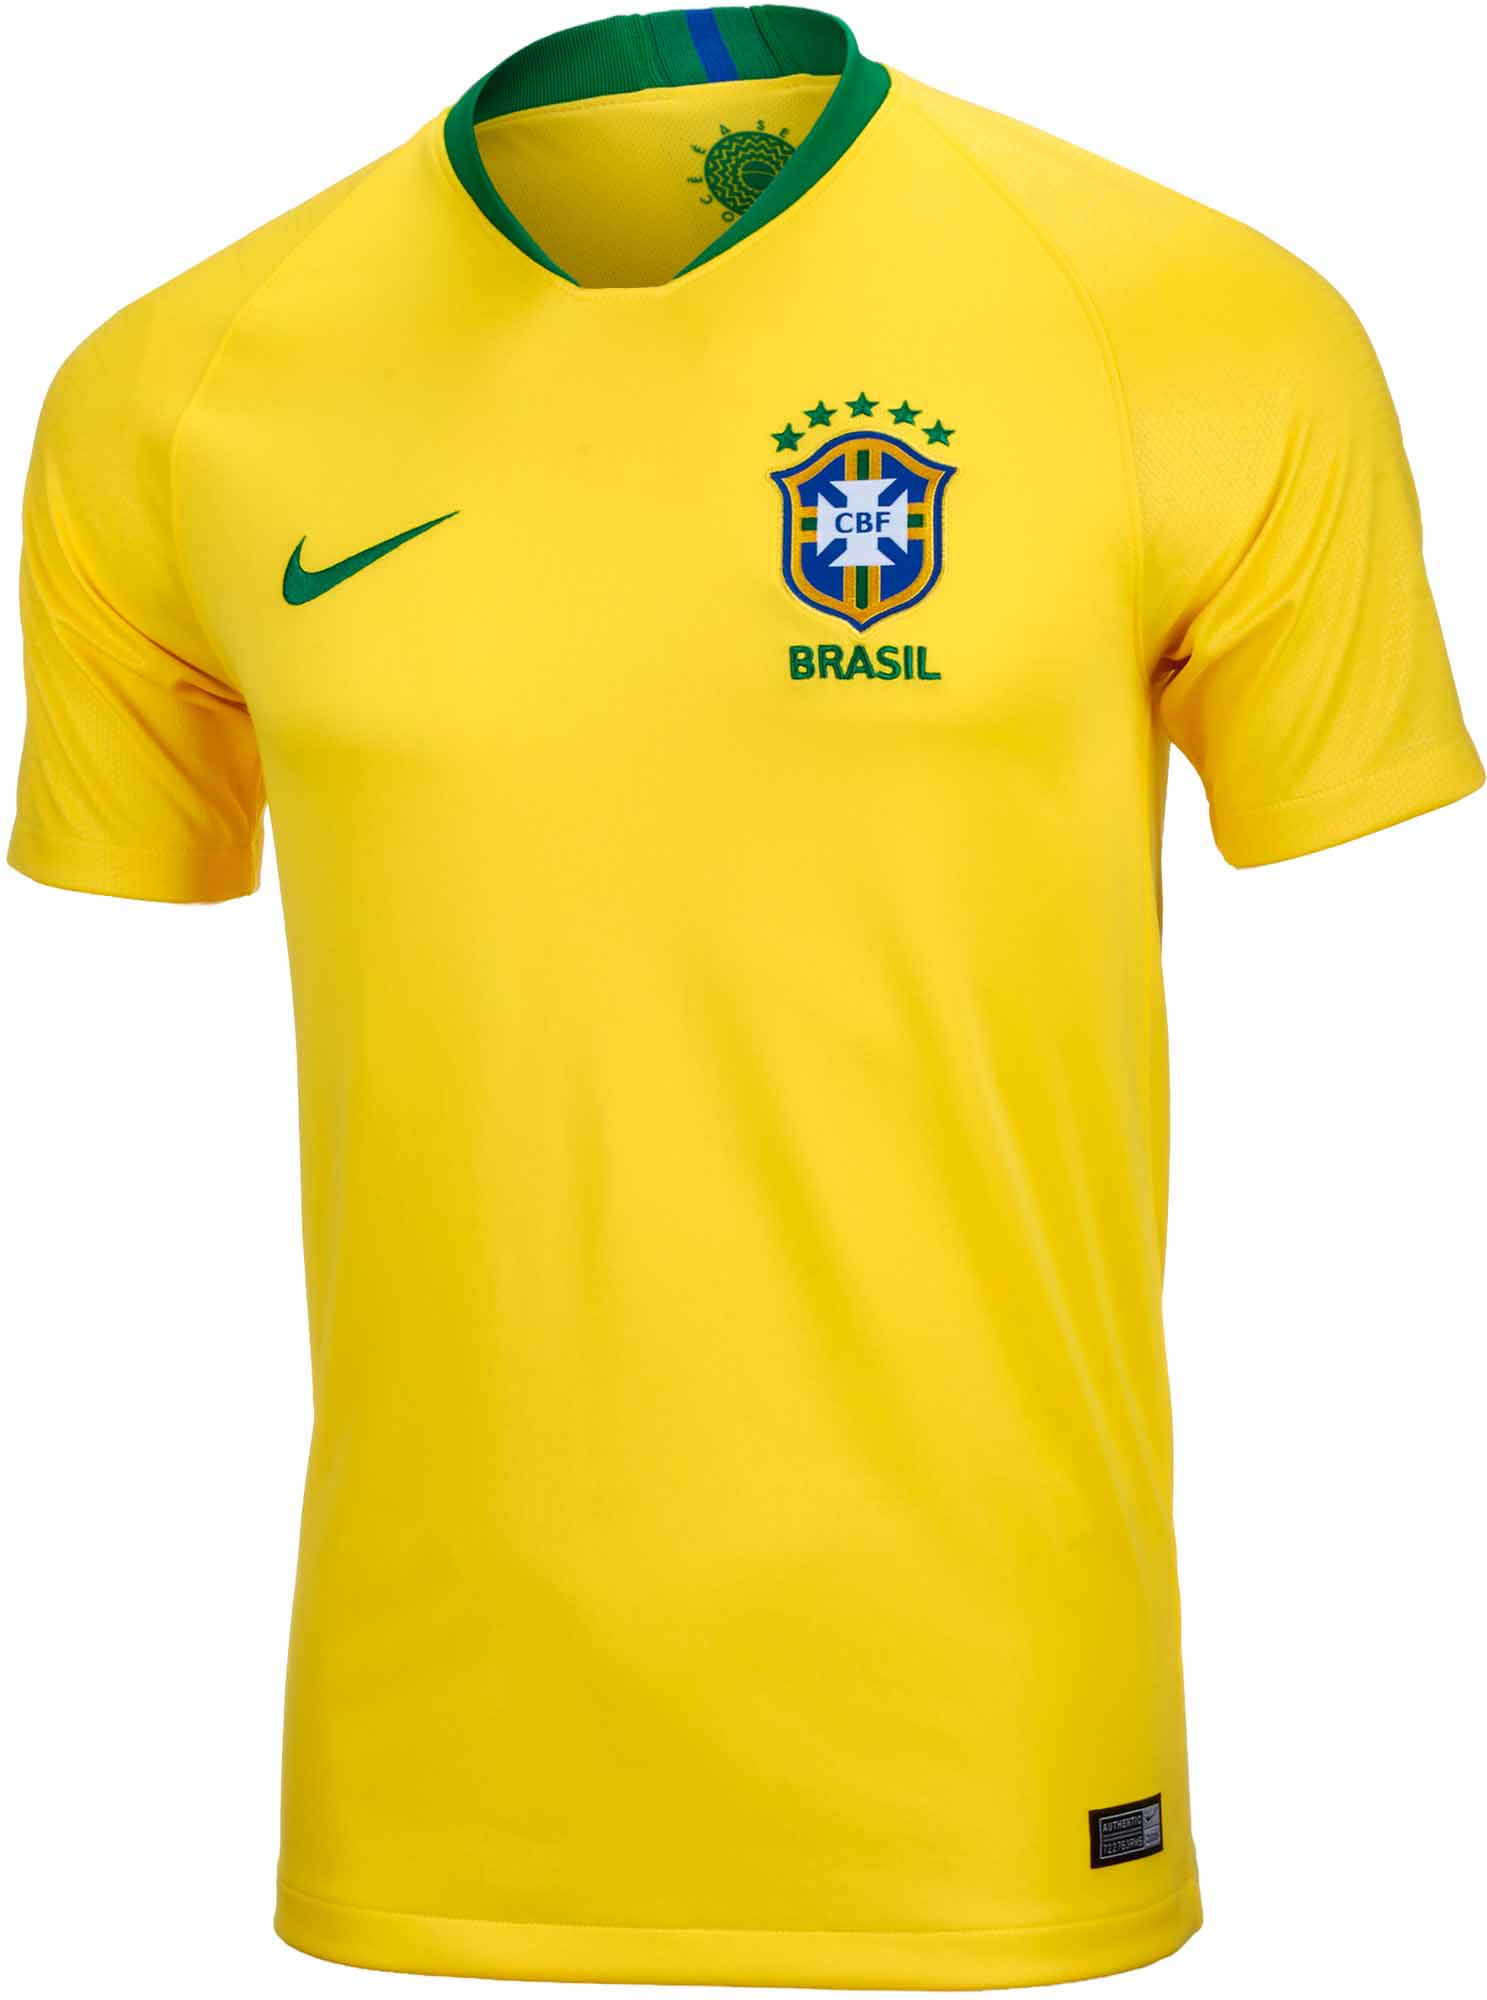 Nike Brazil Home Jersey 201819